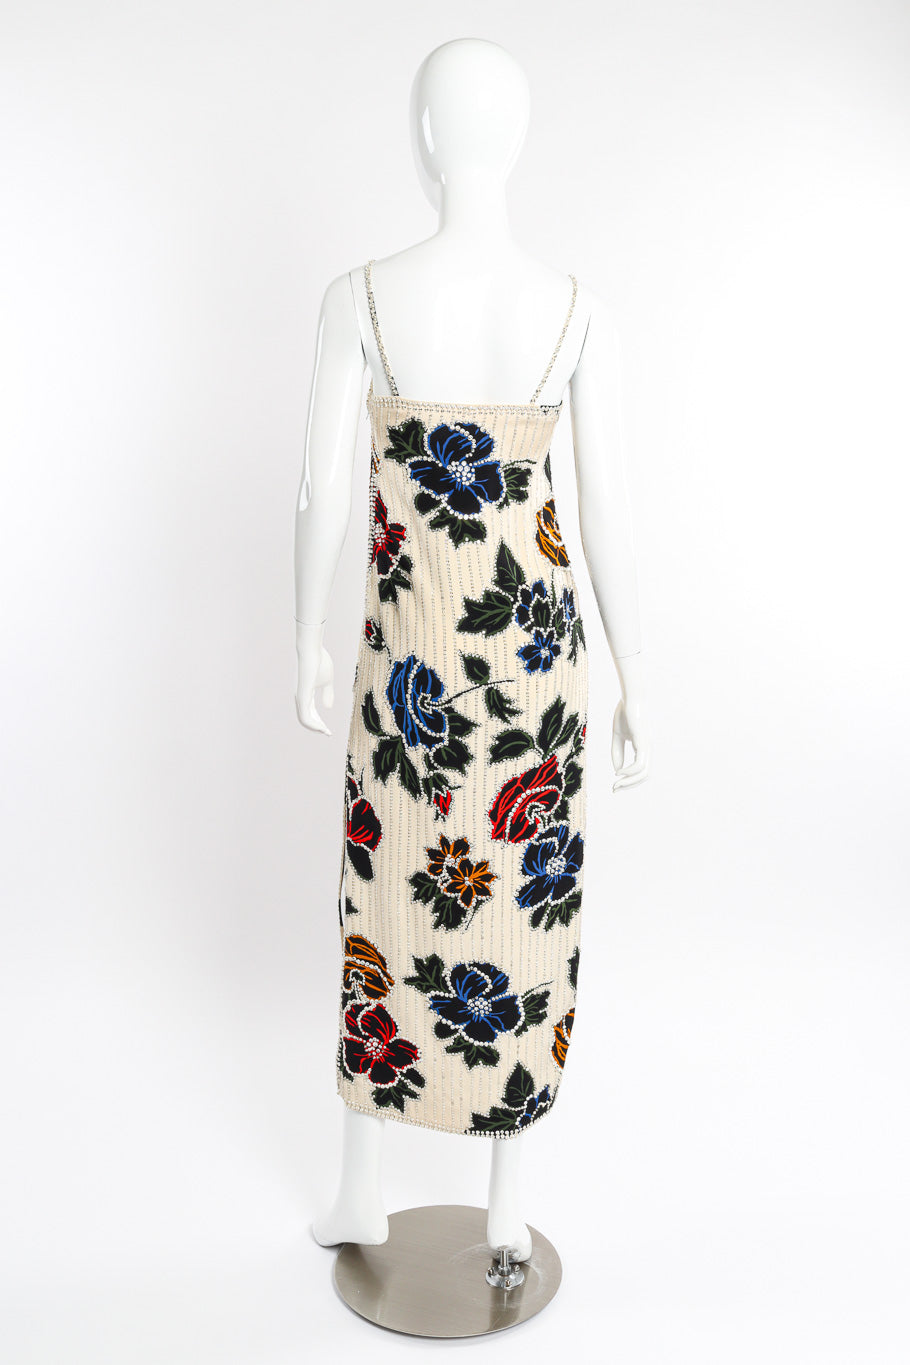 Vintage I.Magnin Floral Crystal Sequin Gown back view on mannequin @recessla